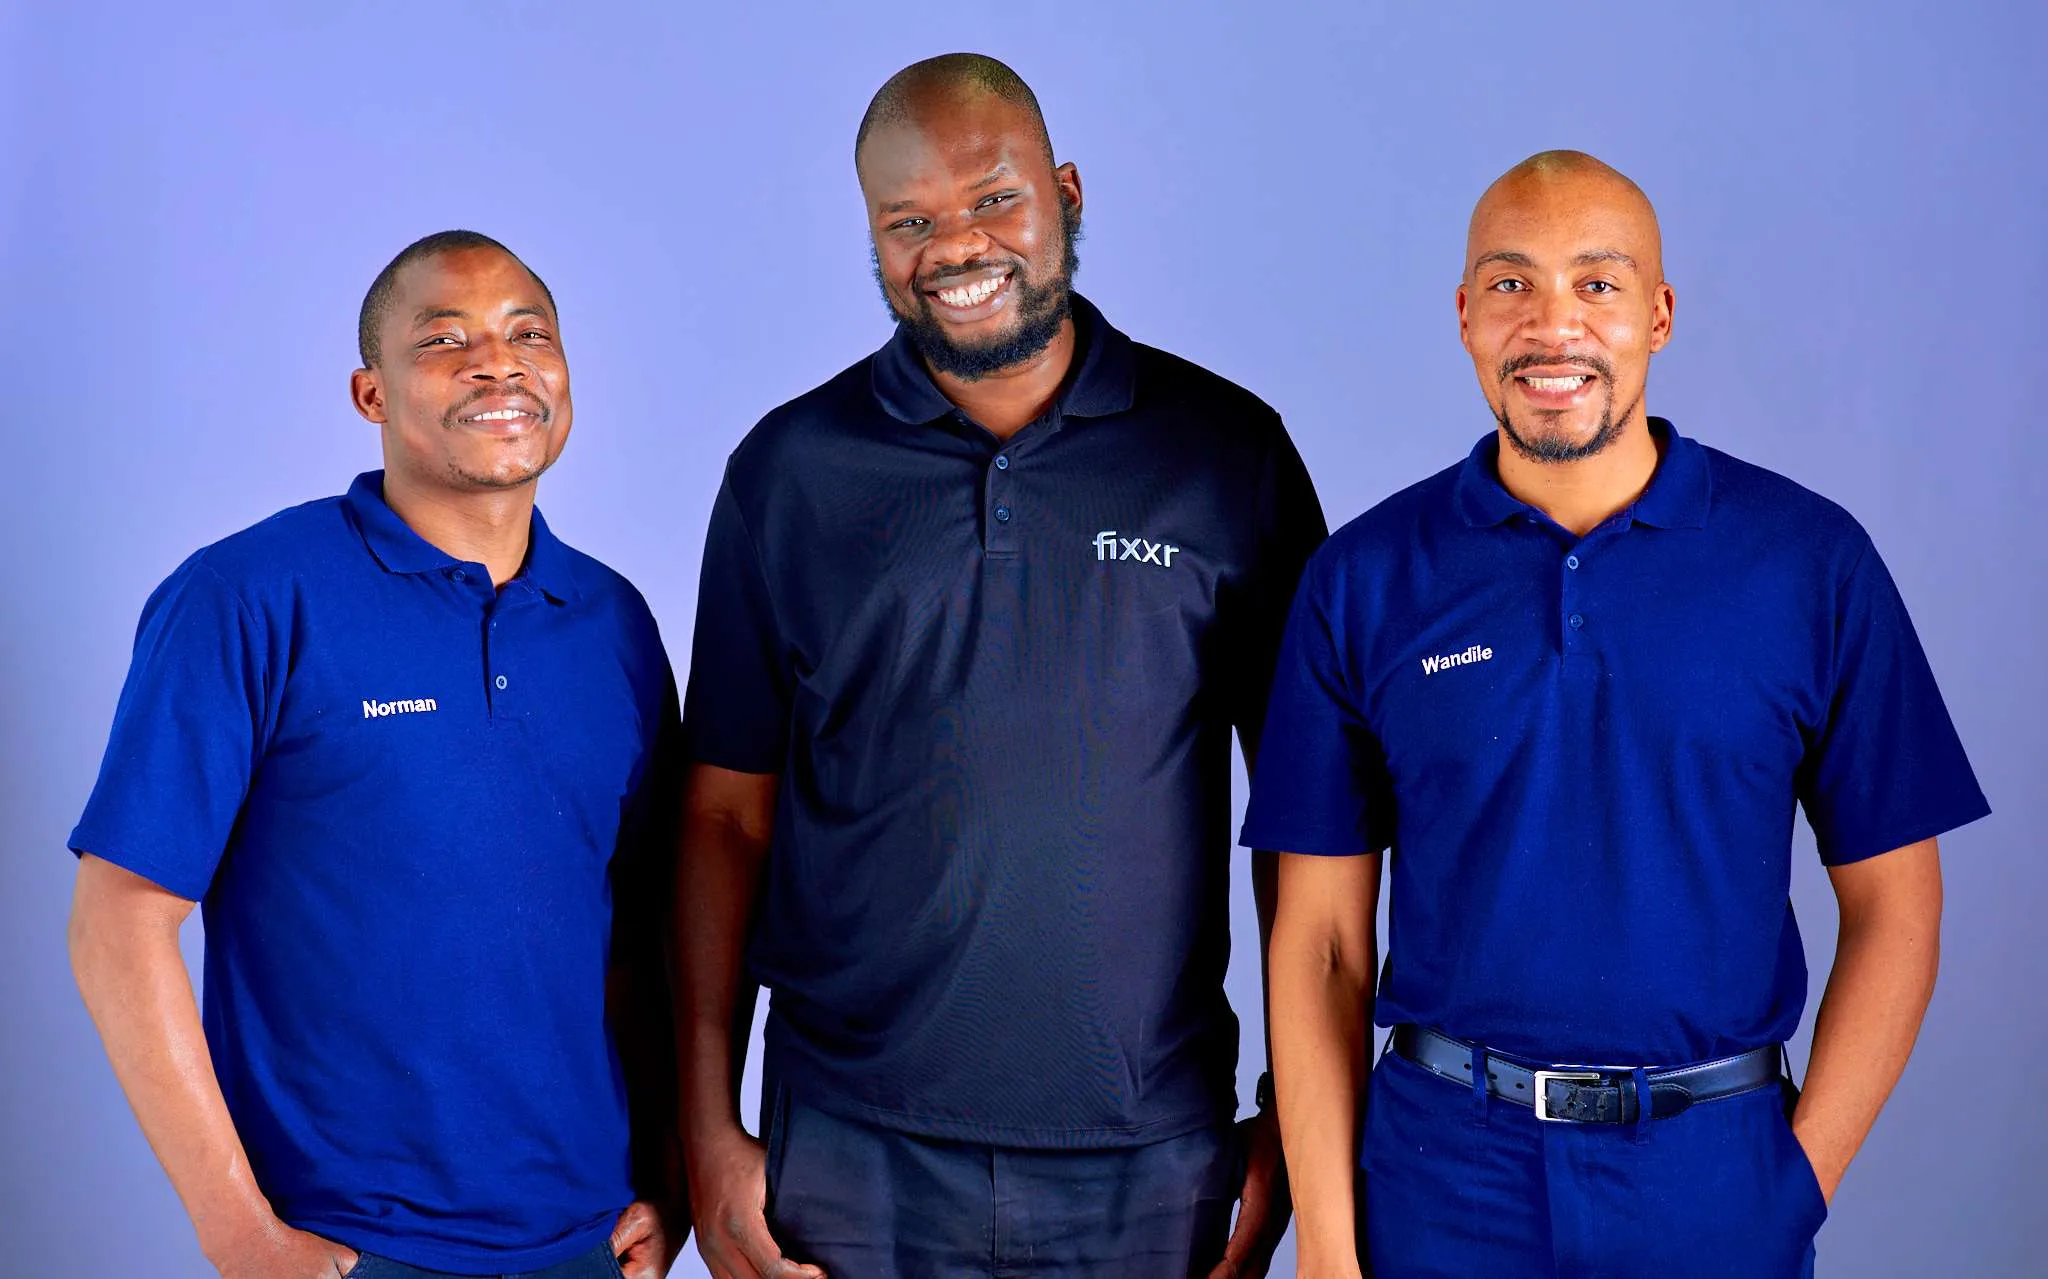 3 Fixxr mechanics standing side by side smiling in Fixxr golf shirts